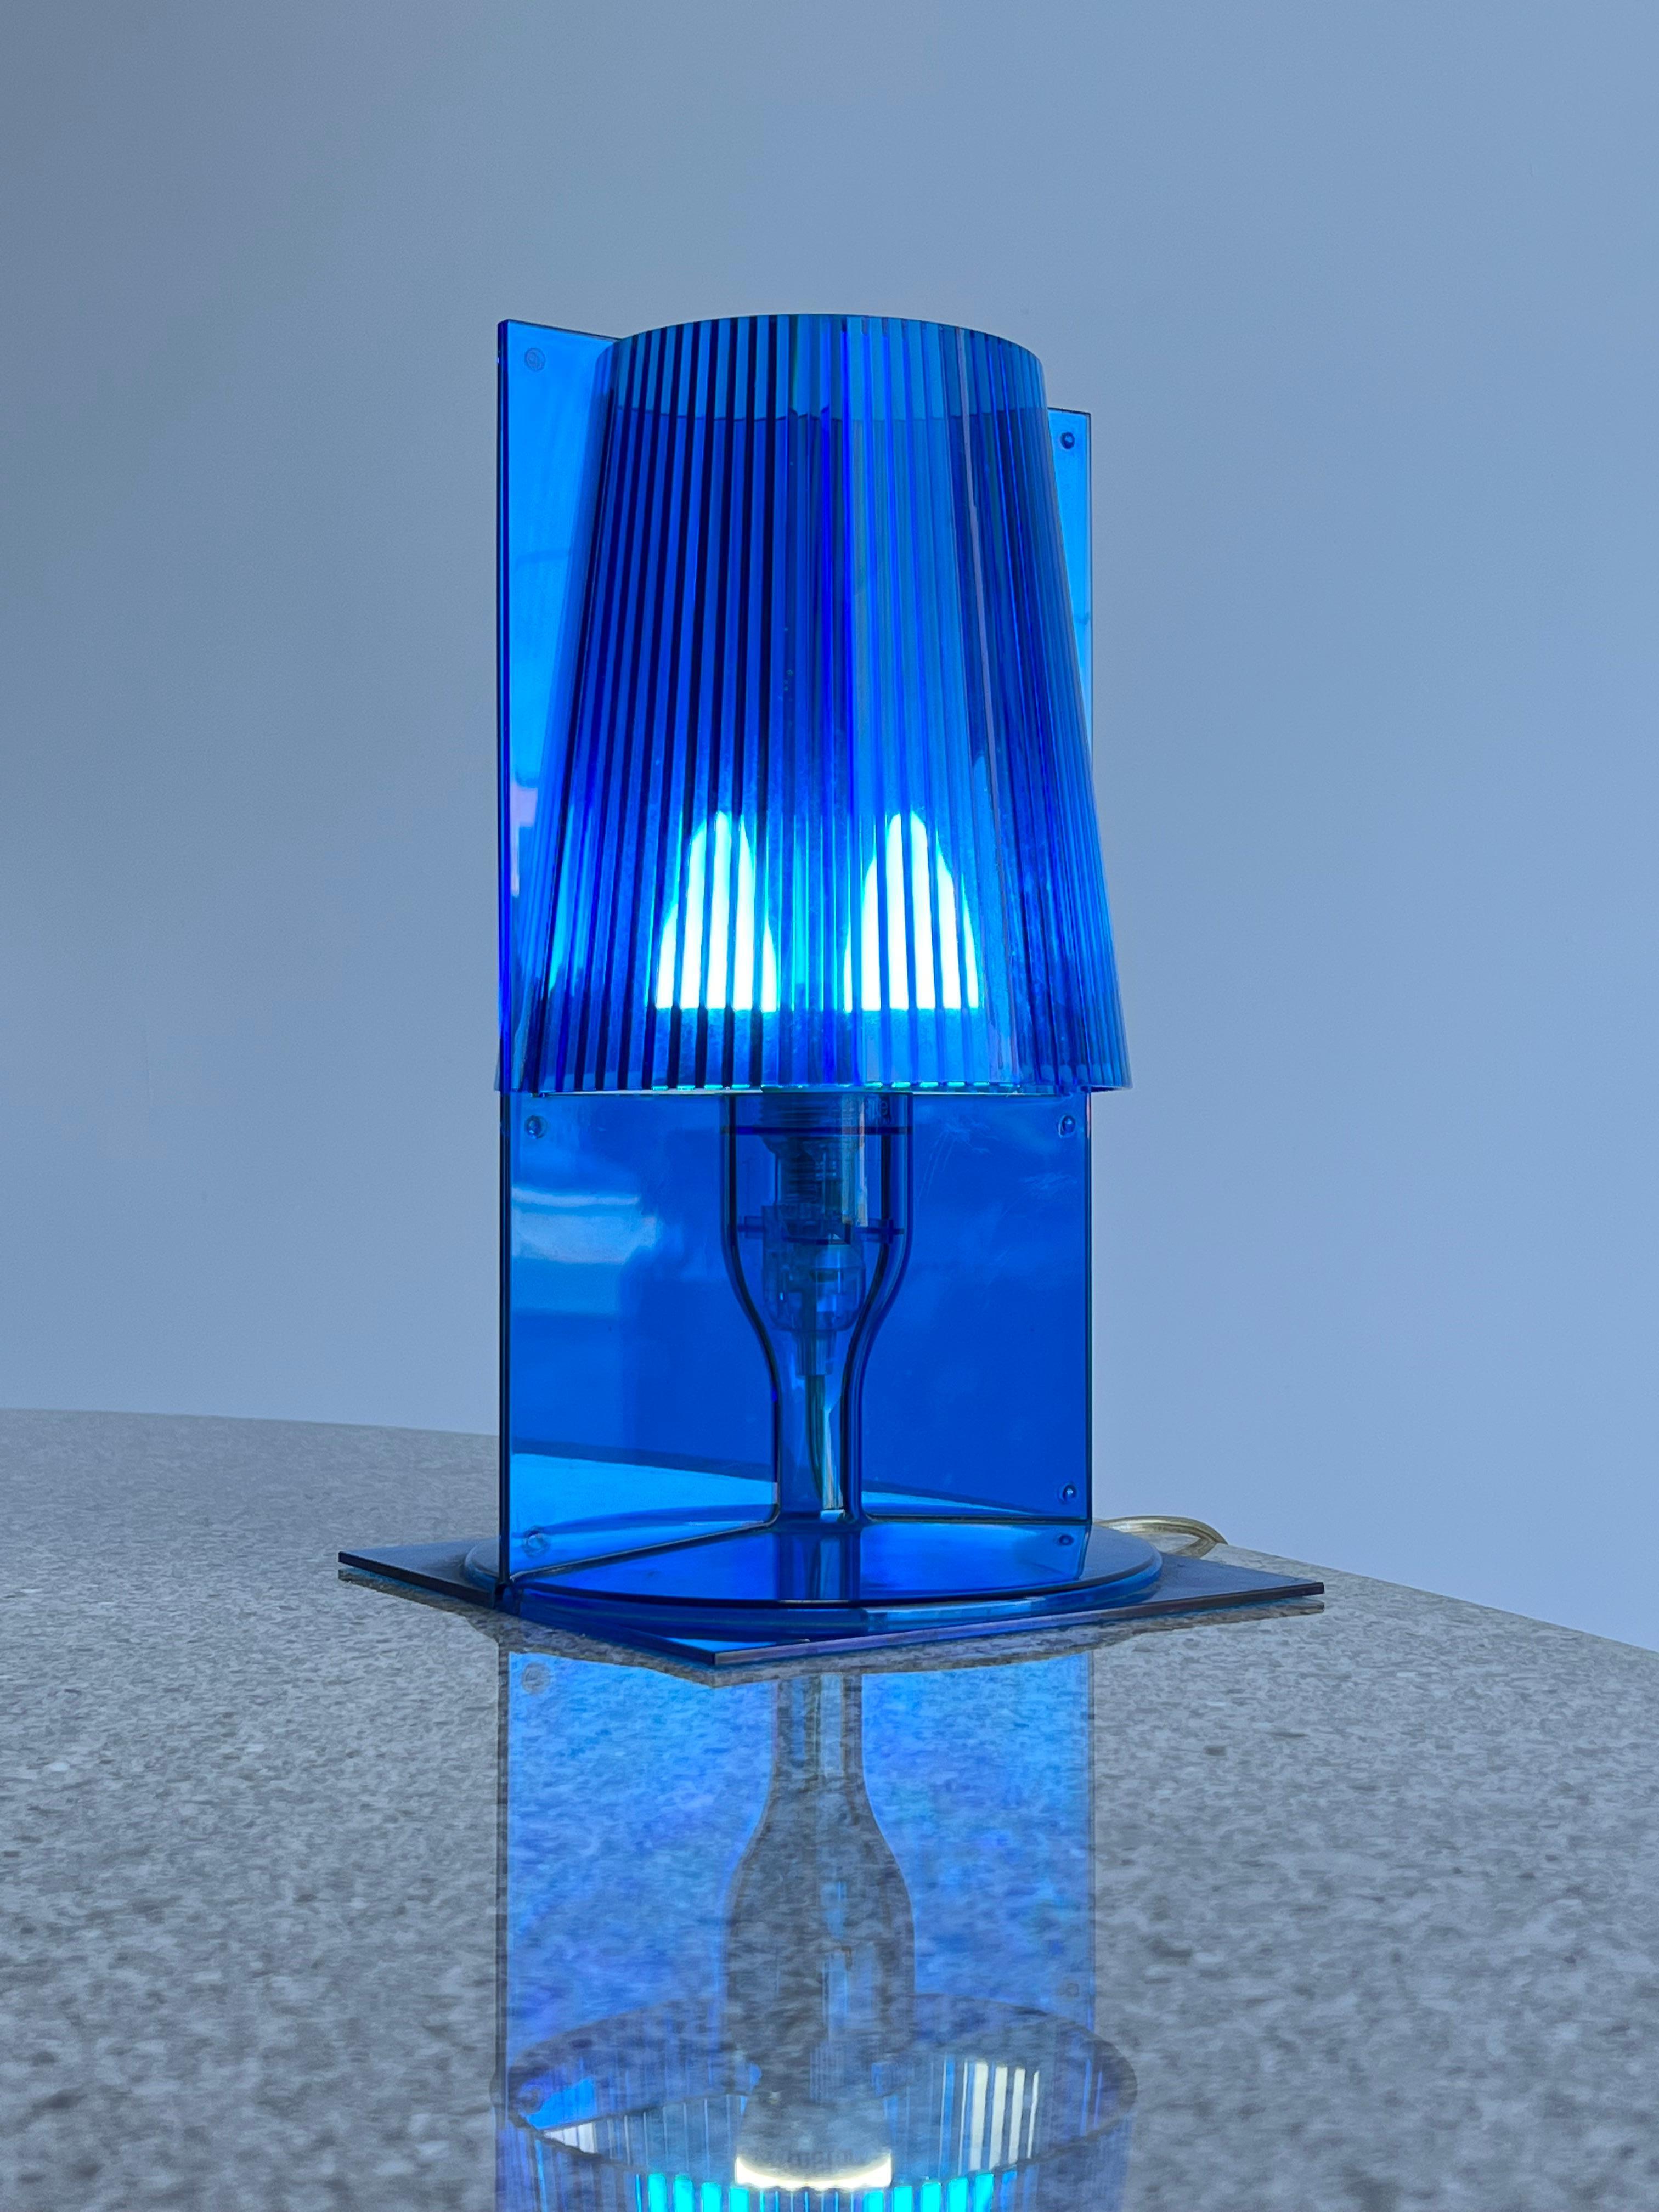 Plastic Ferruccio Laviani for Kartell Italian Table Lamp